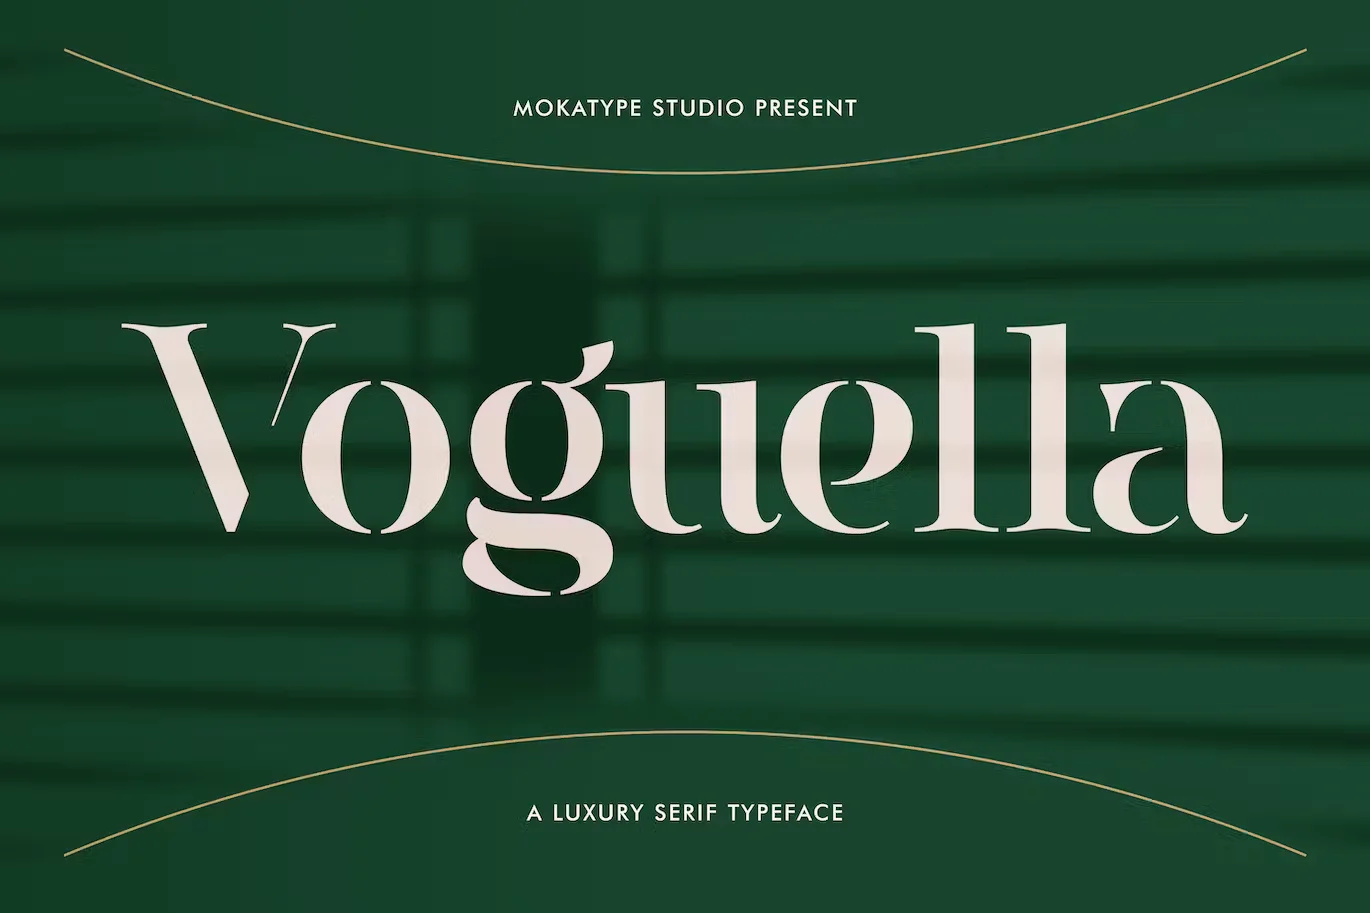 Voguella - Luxury Serif